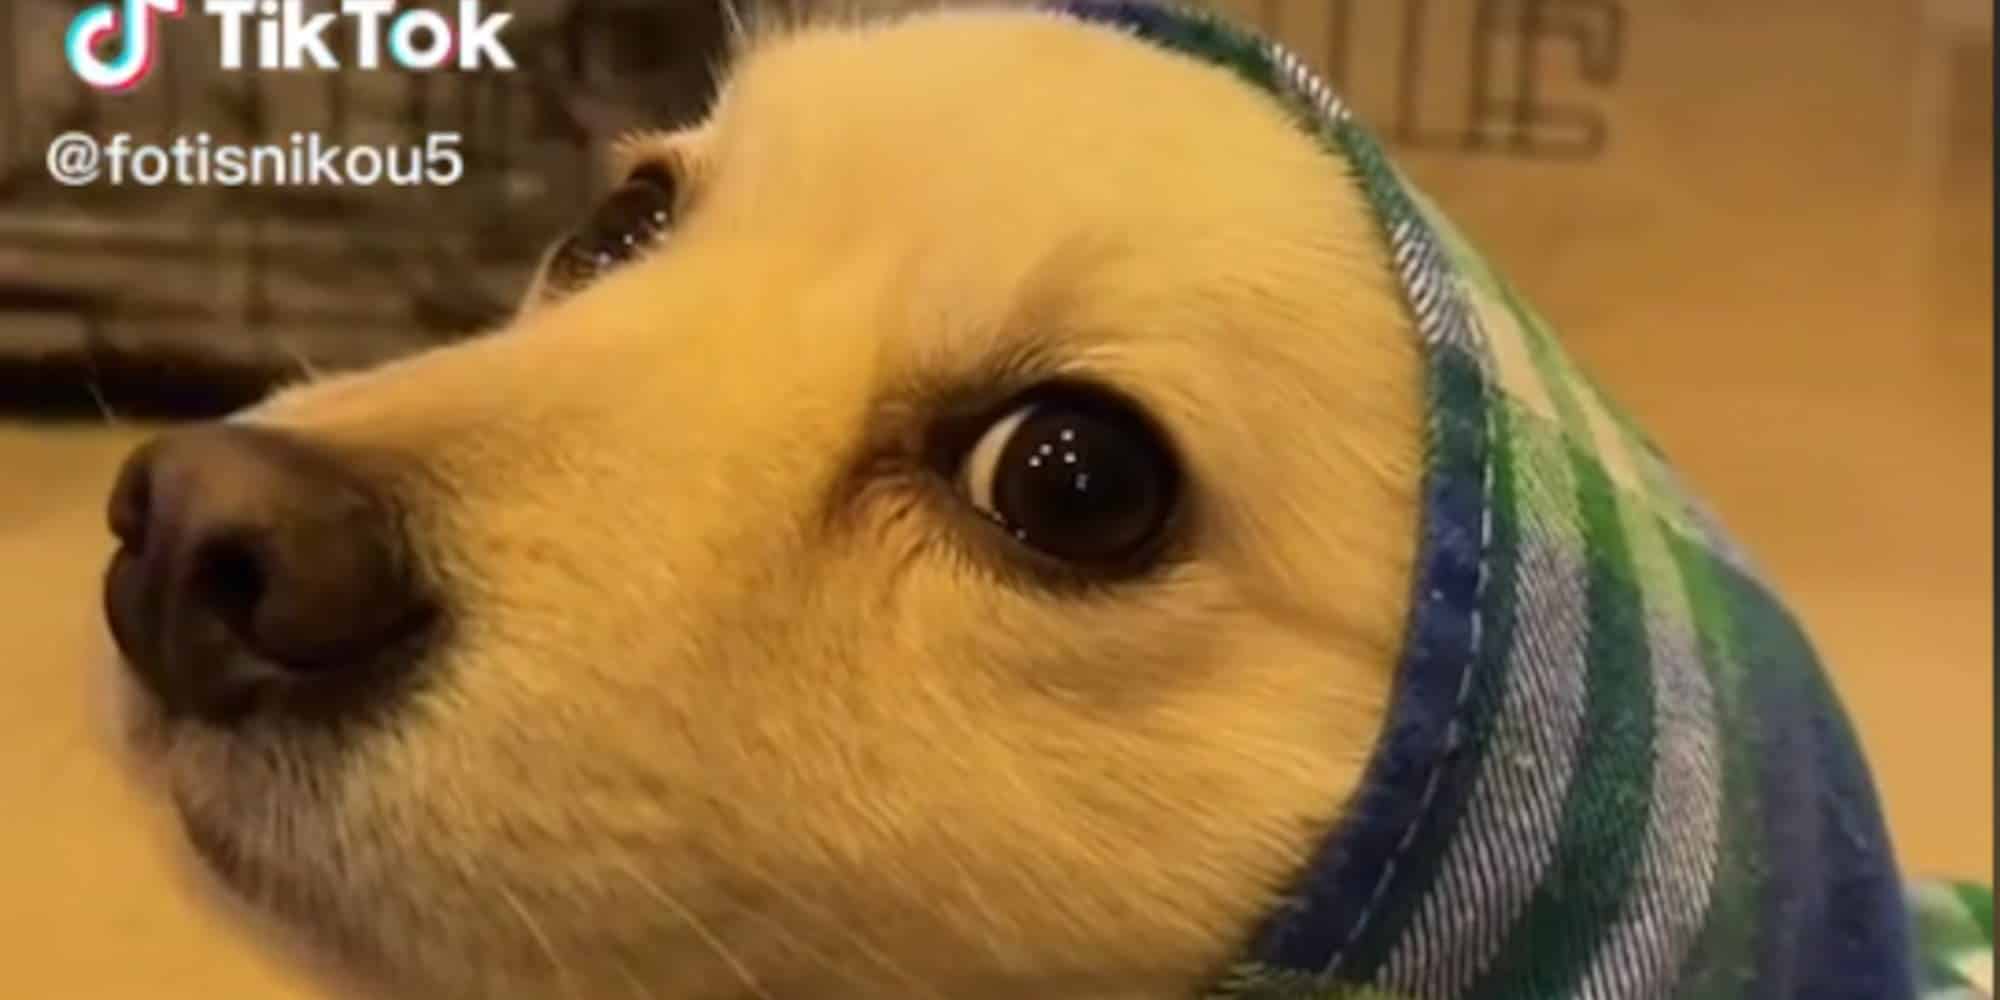 Το απόλυτο viral με σκυλάκια και ατάκα από ταινία της Βουγιουκλάκη στο TikTok